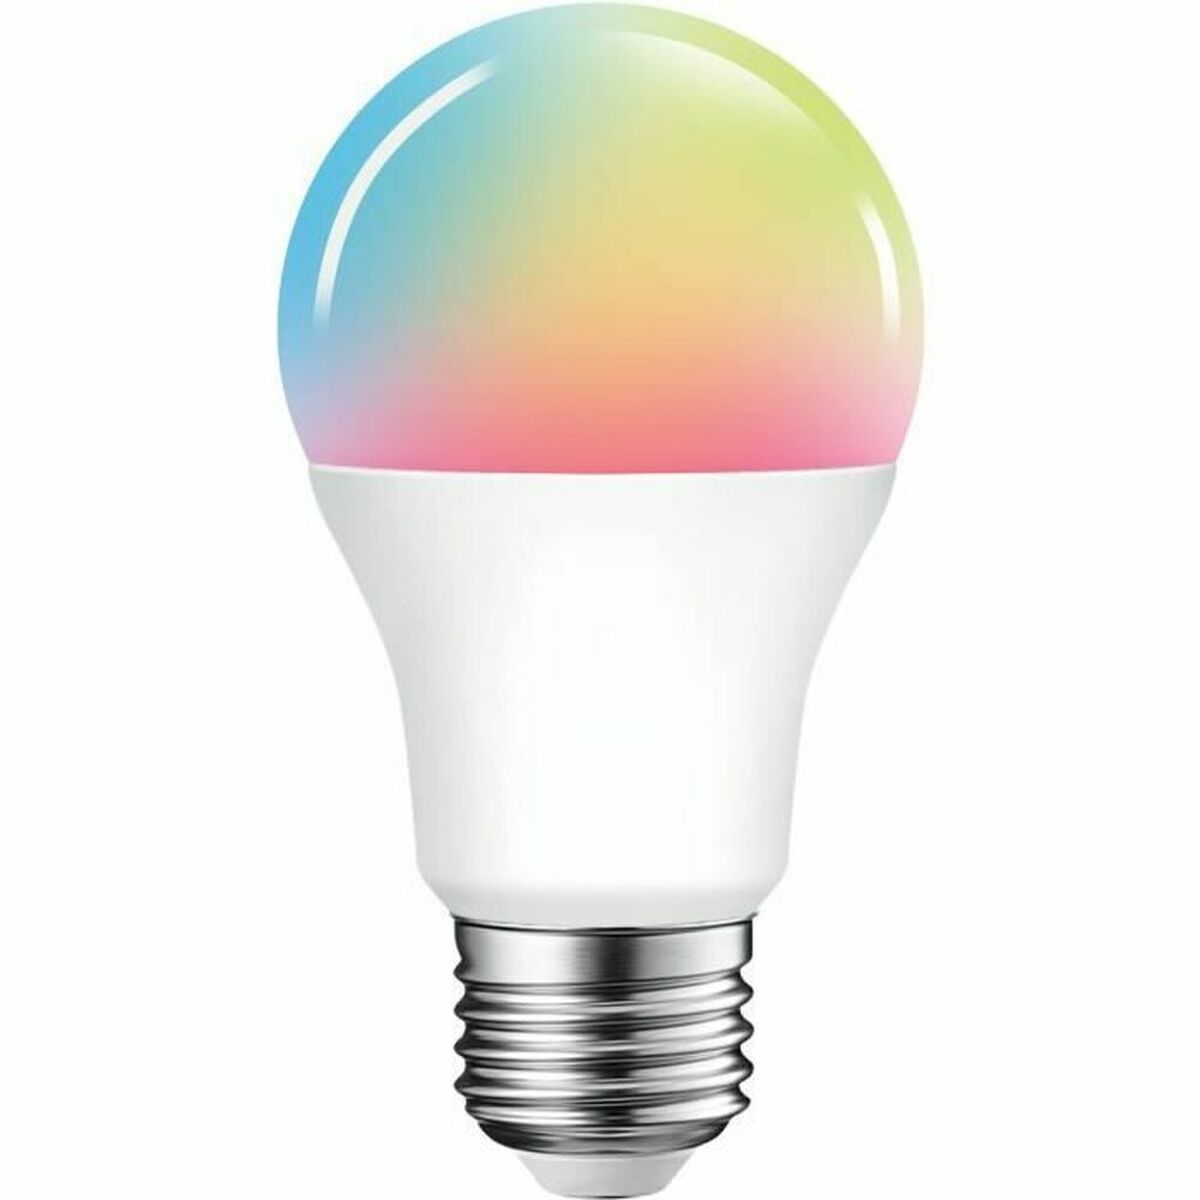 Smart Light bulb Ezviz LB1 8 W E27 LED RGB